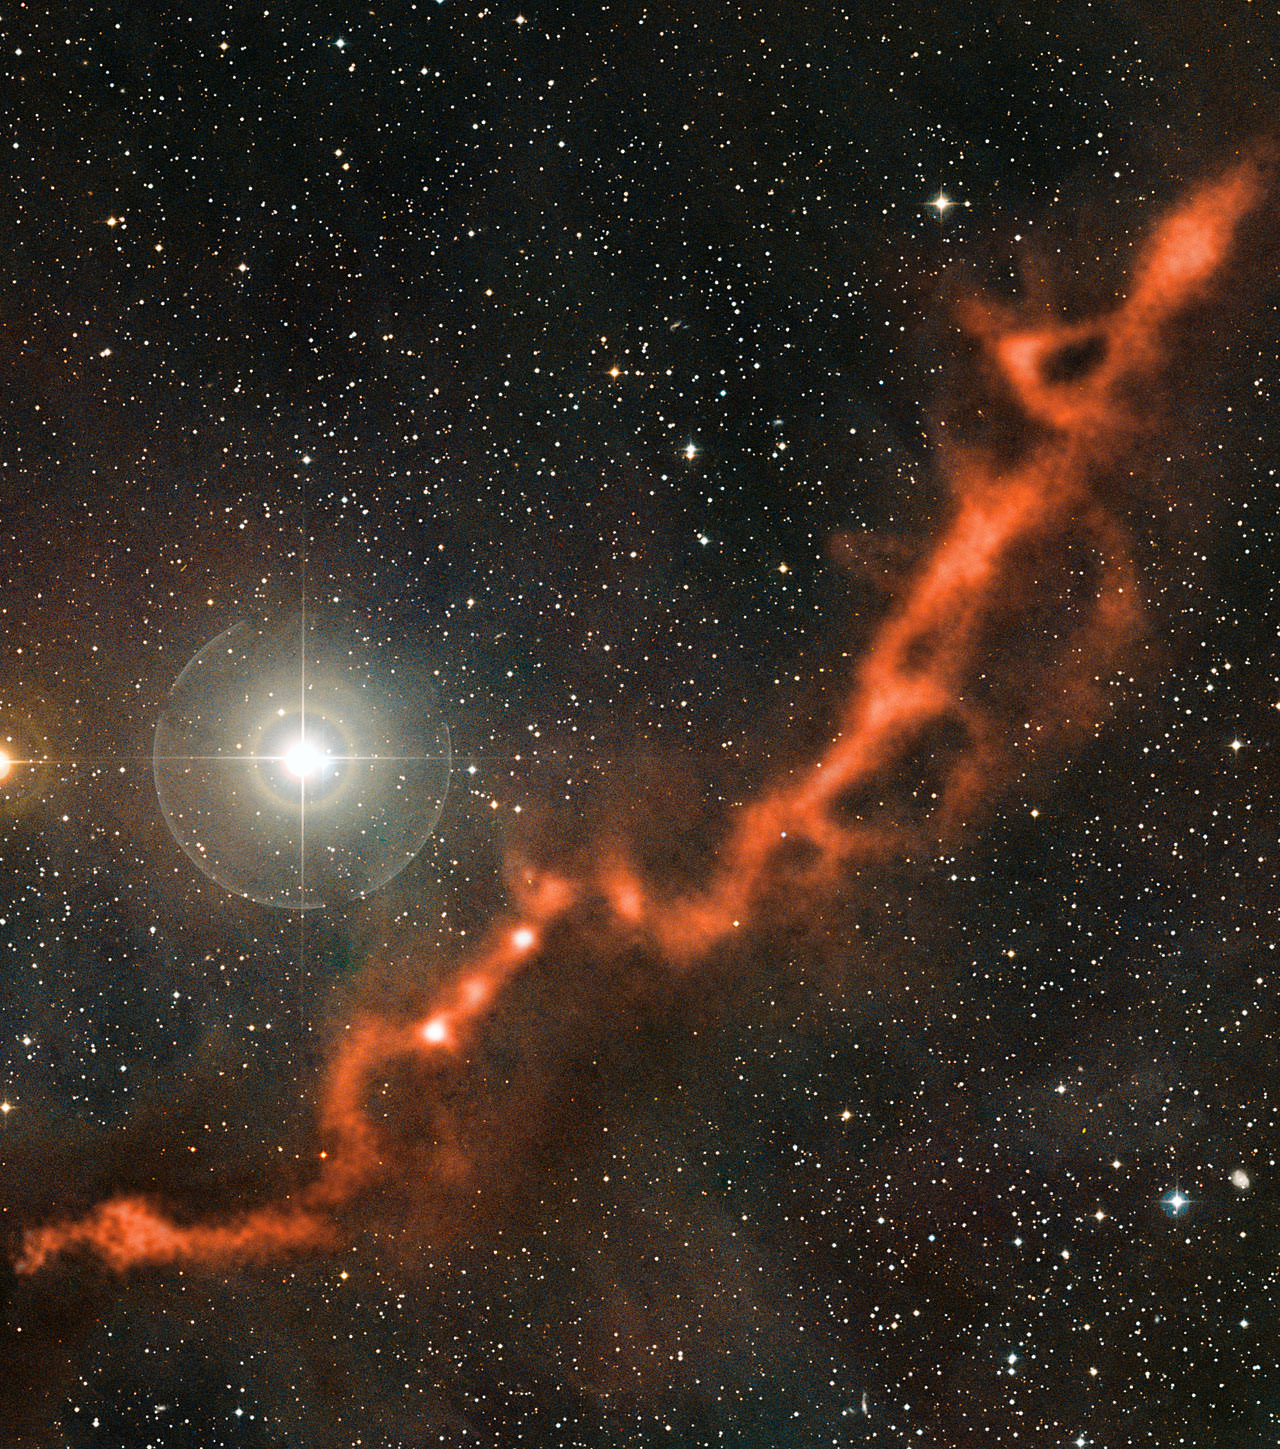 На этом снимке части молекулярного облака Тельца, сделанном телескопом APEX, видна извилистая нить космической пыли длиной более десяти световых лет. Может ли жизнь существовать в молекулярных облаках, подобных этому?